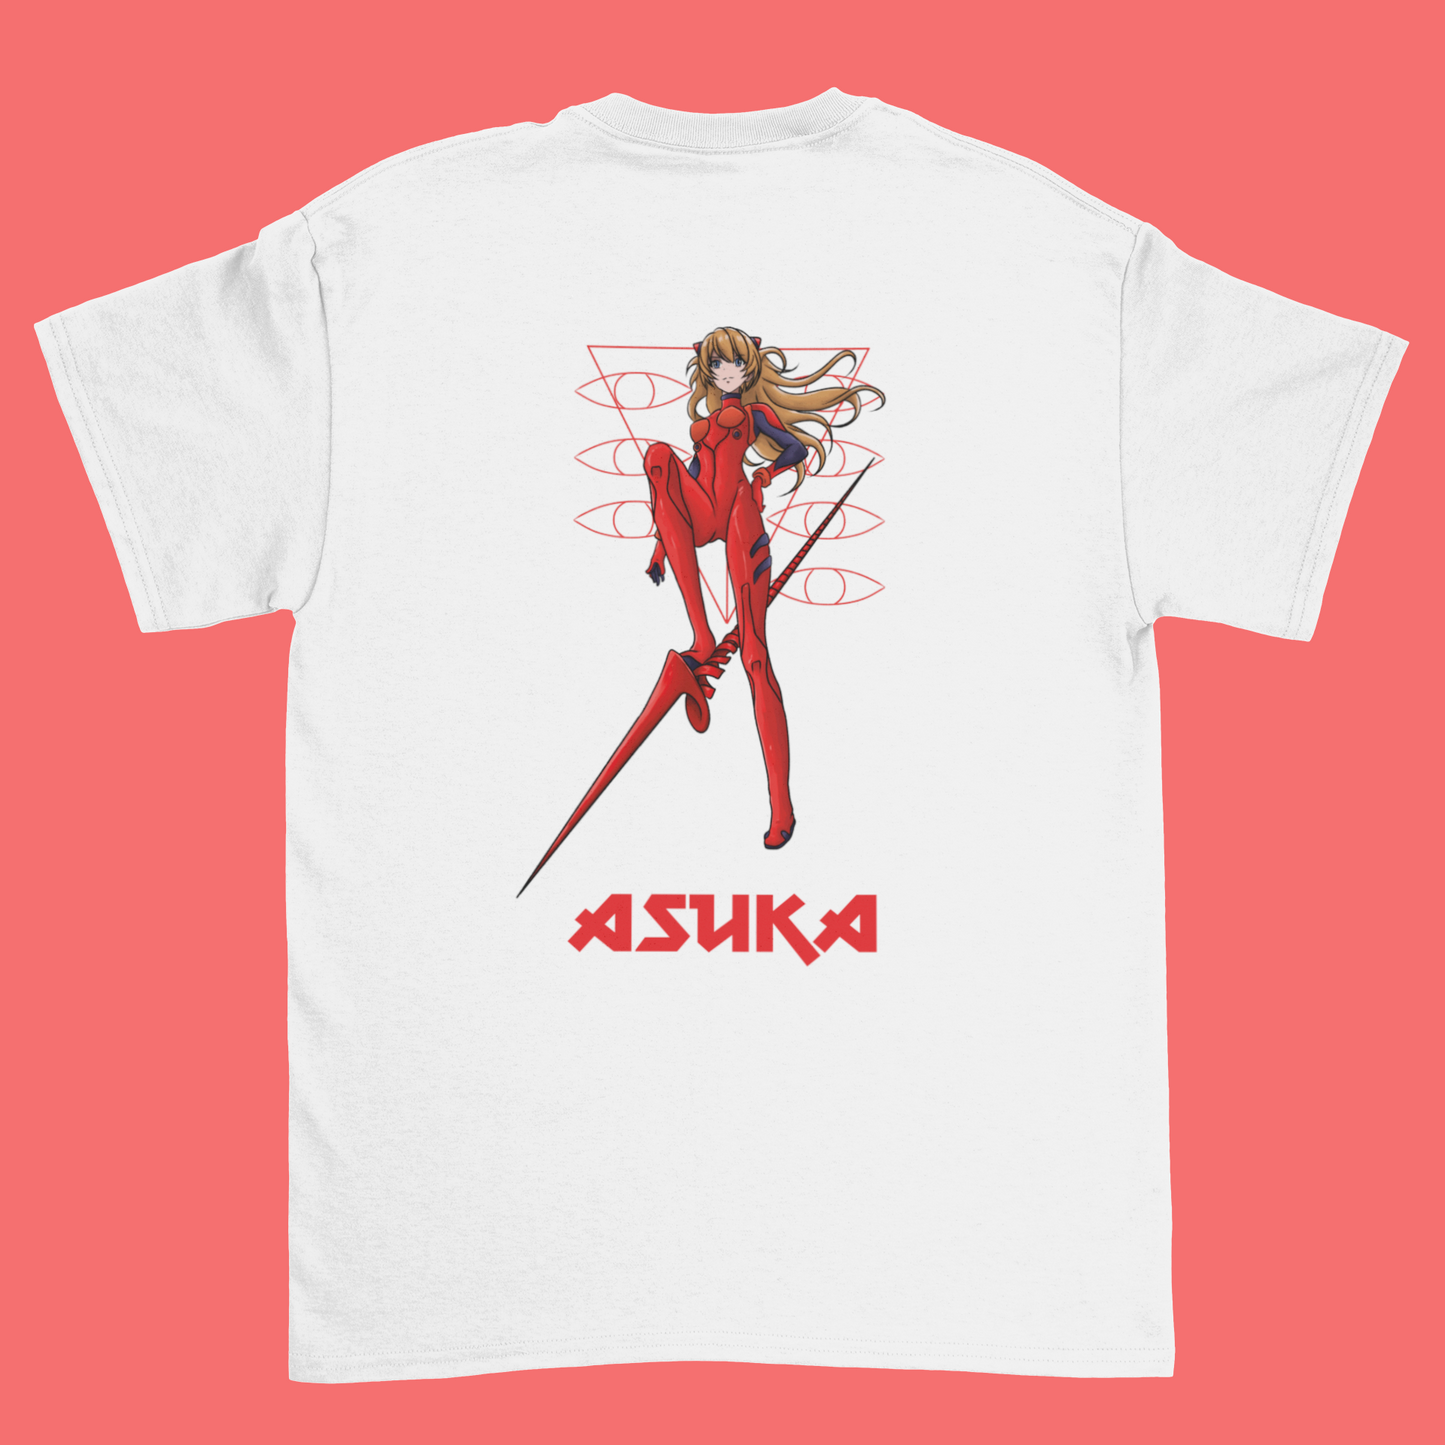 Asuka T-shirt